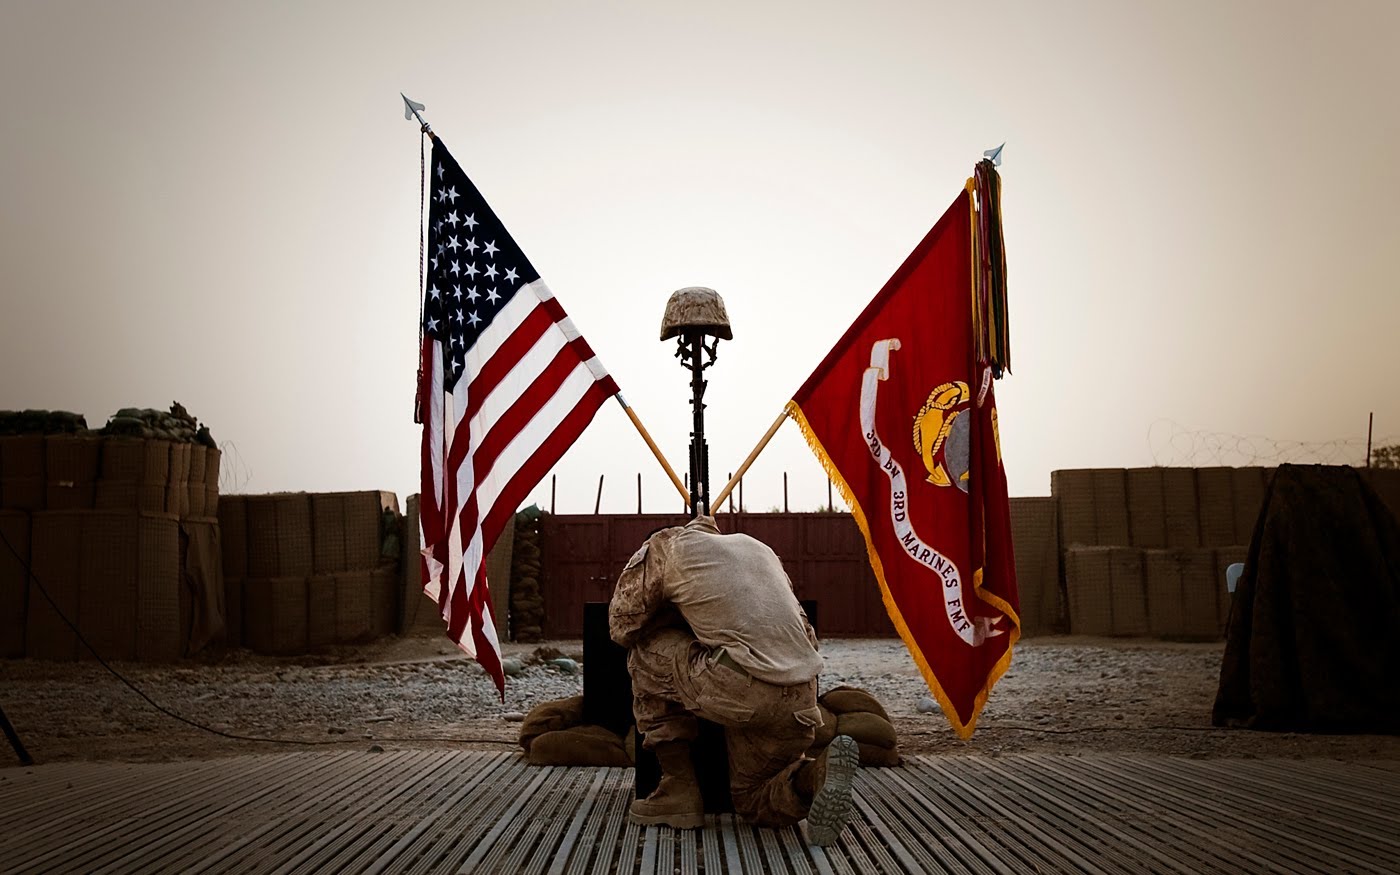 10 best Memorial images on Pinterest Fallen soldiers